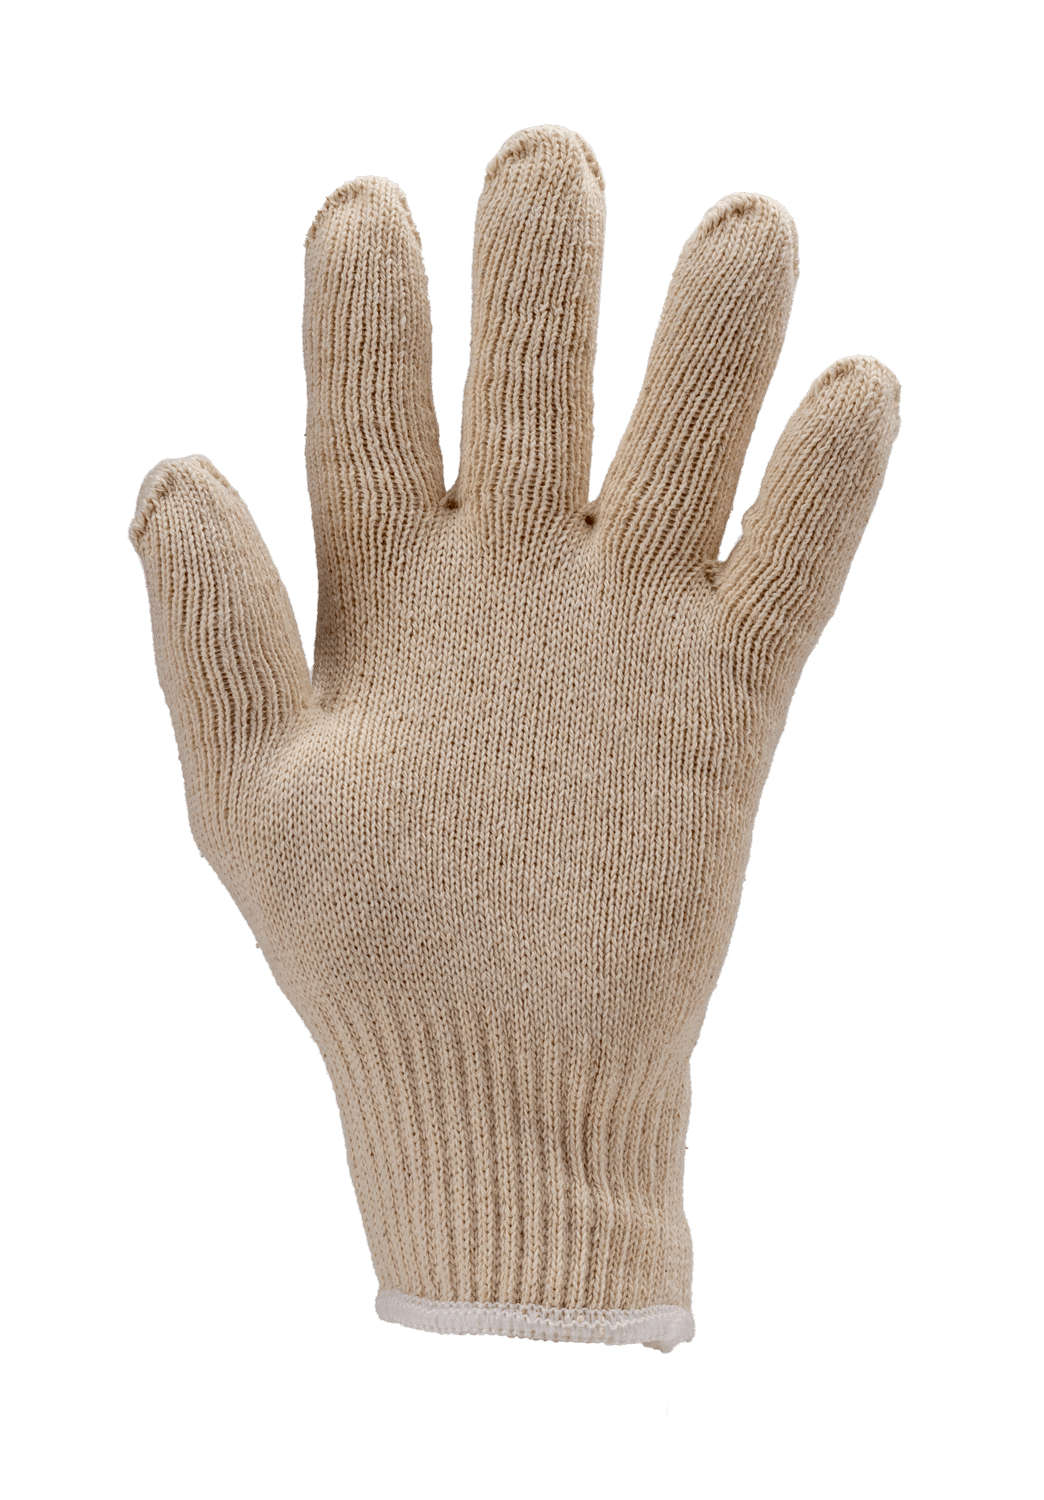 Sous-gants Unik Coton - 12€